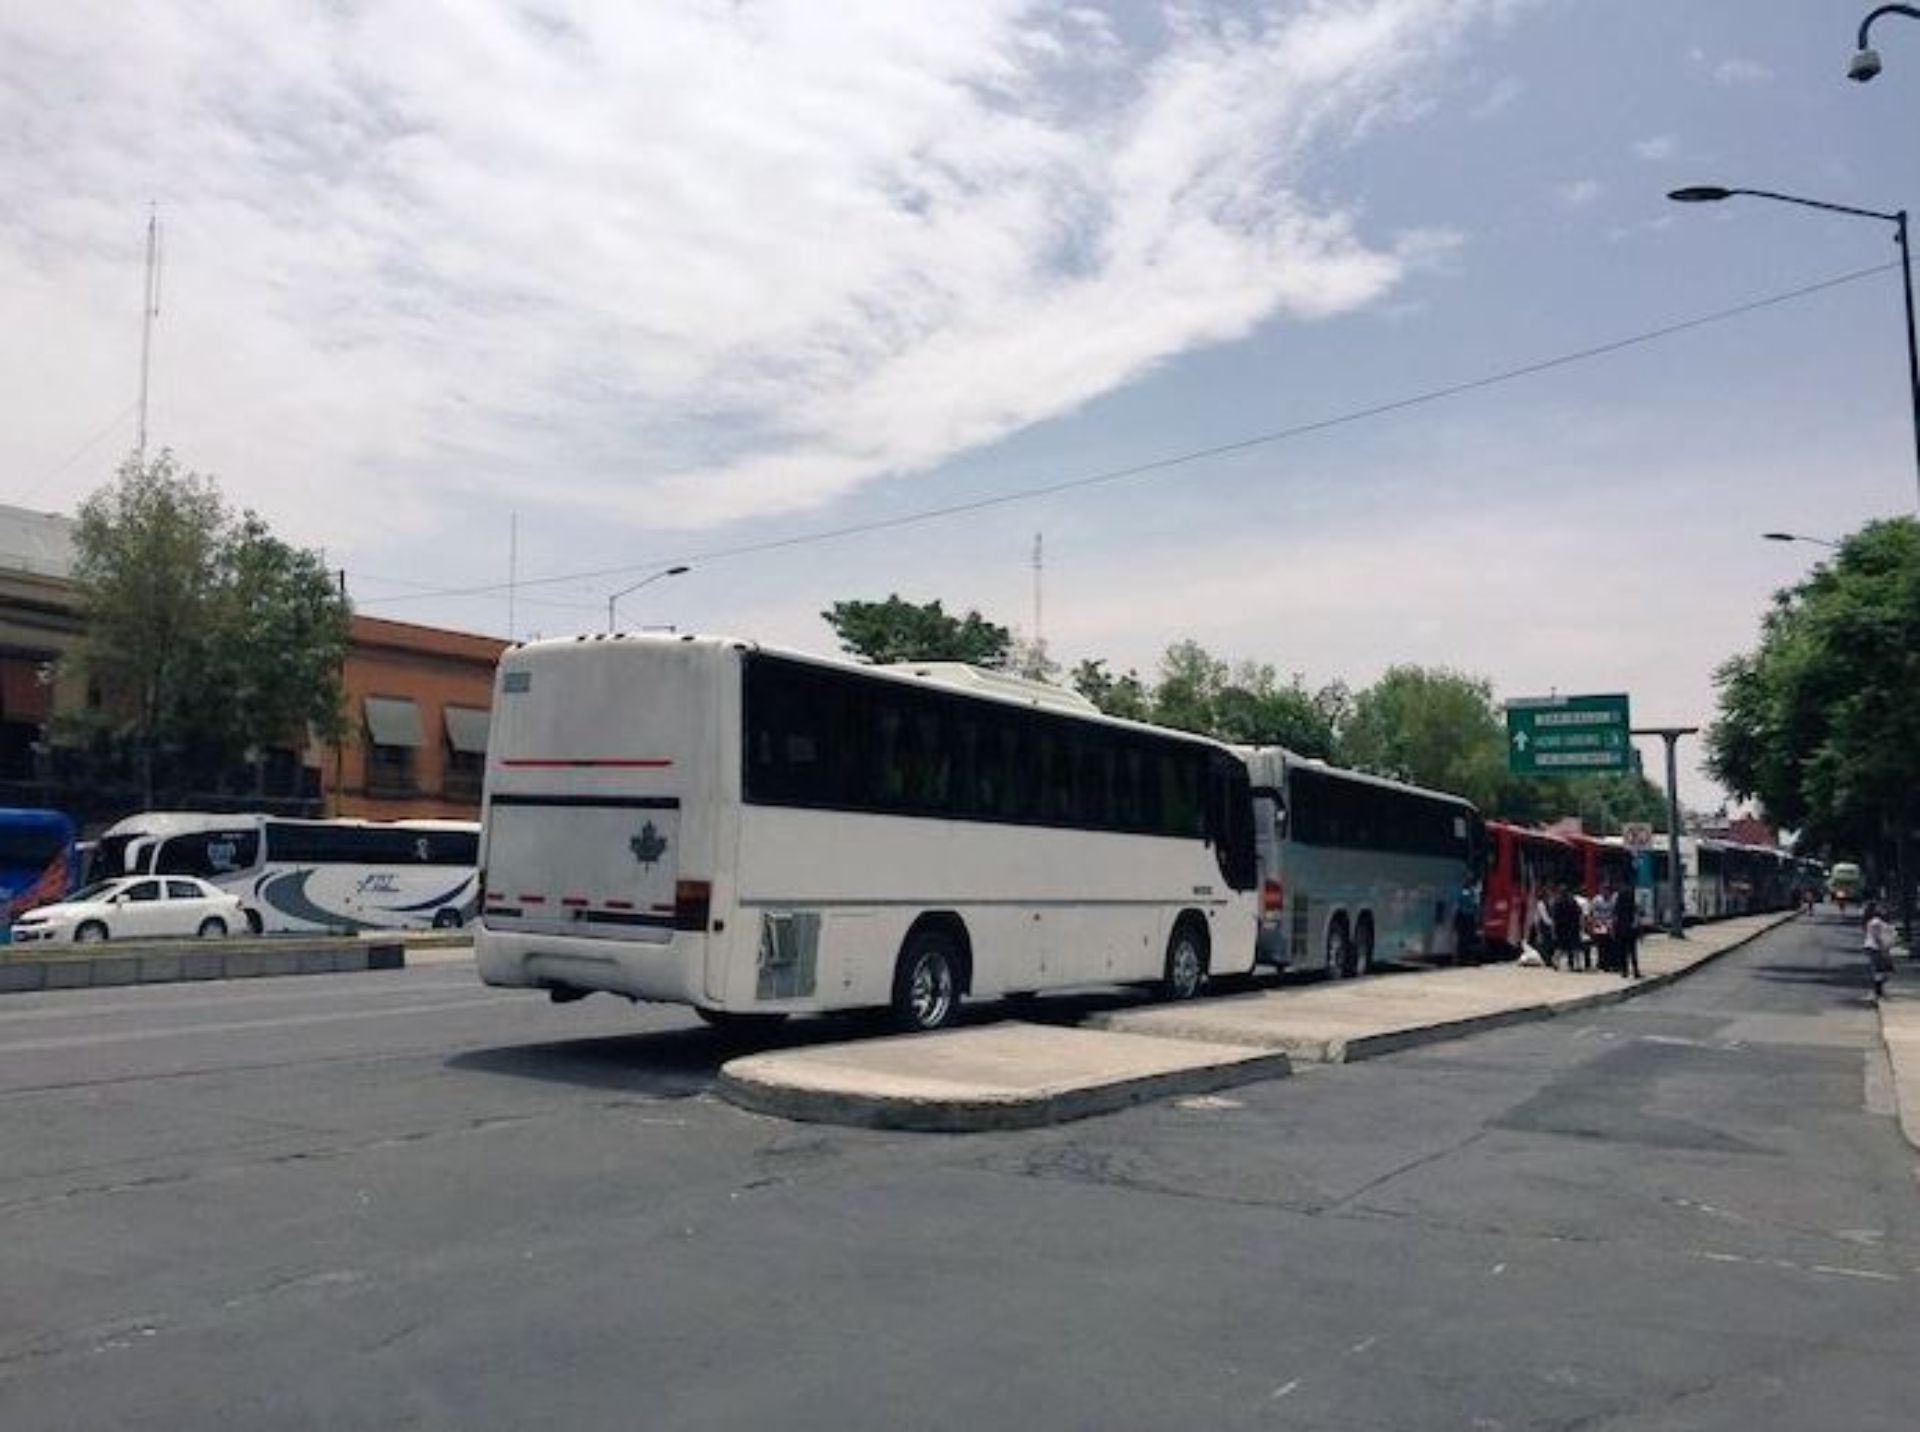 Desde el medio día, decenas de autobuses ocuparon las avenidas principales de la colonia Centro, esperando el inicio del AMLOFest (Foto: @ARTHU68)